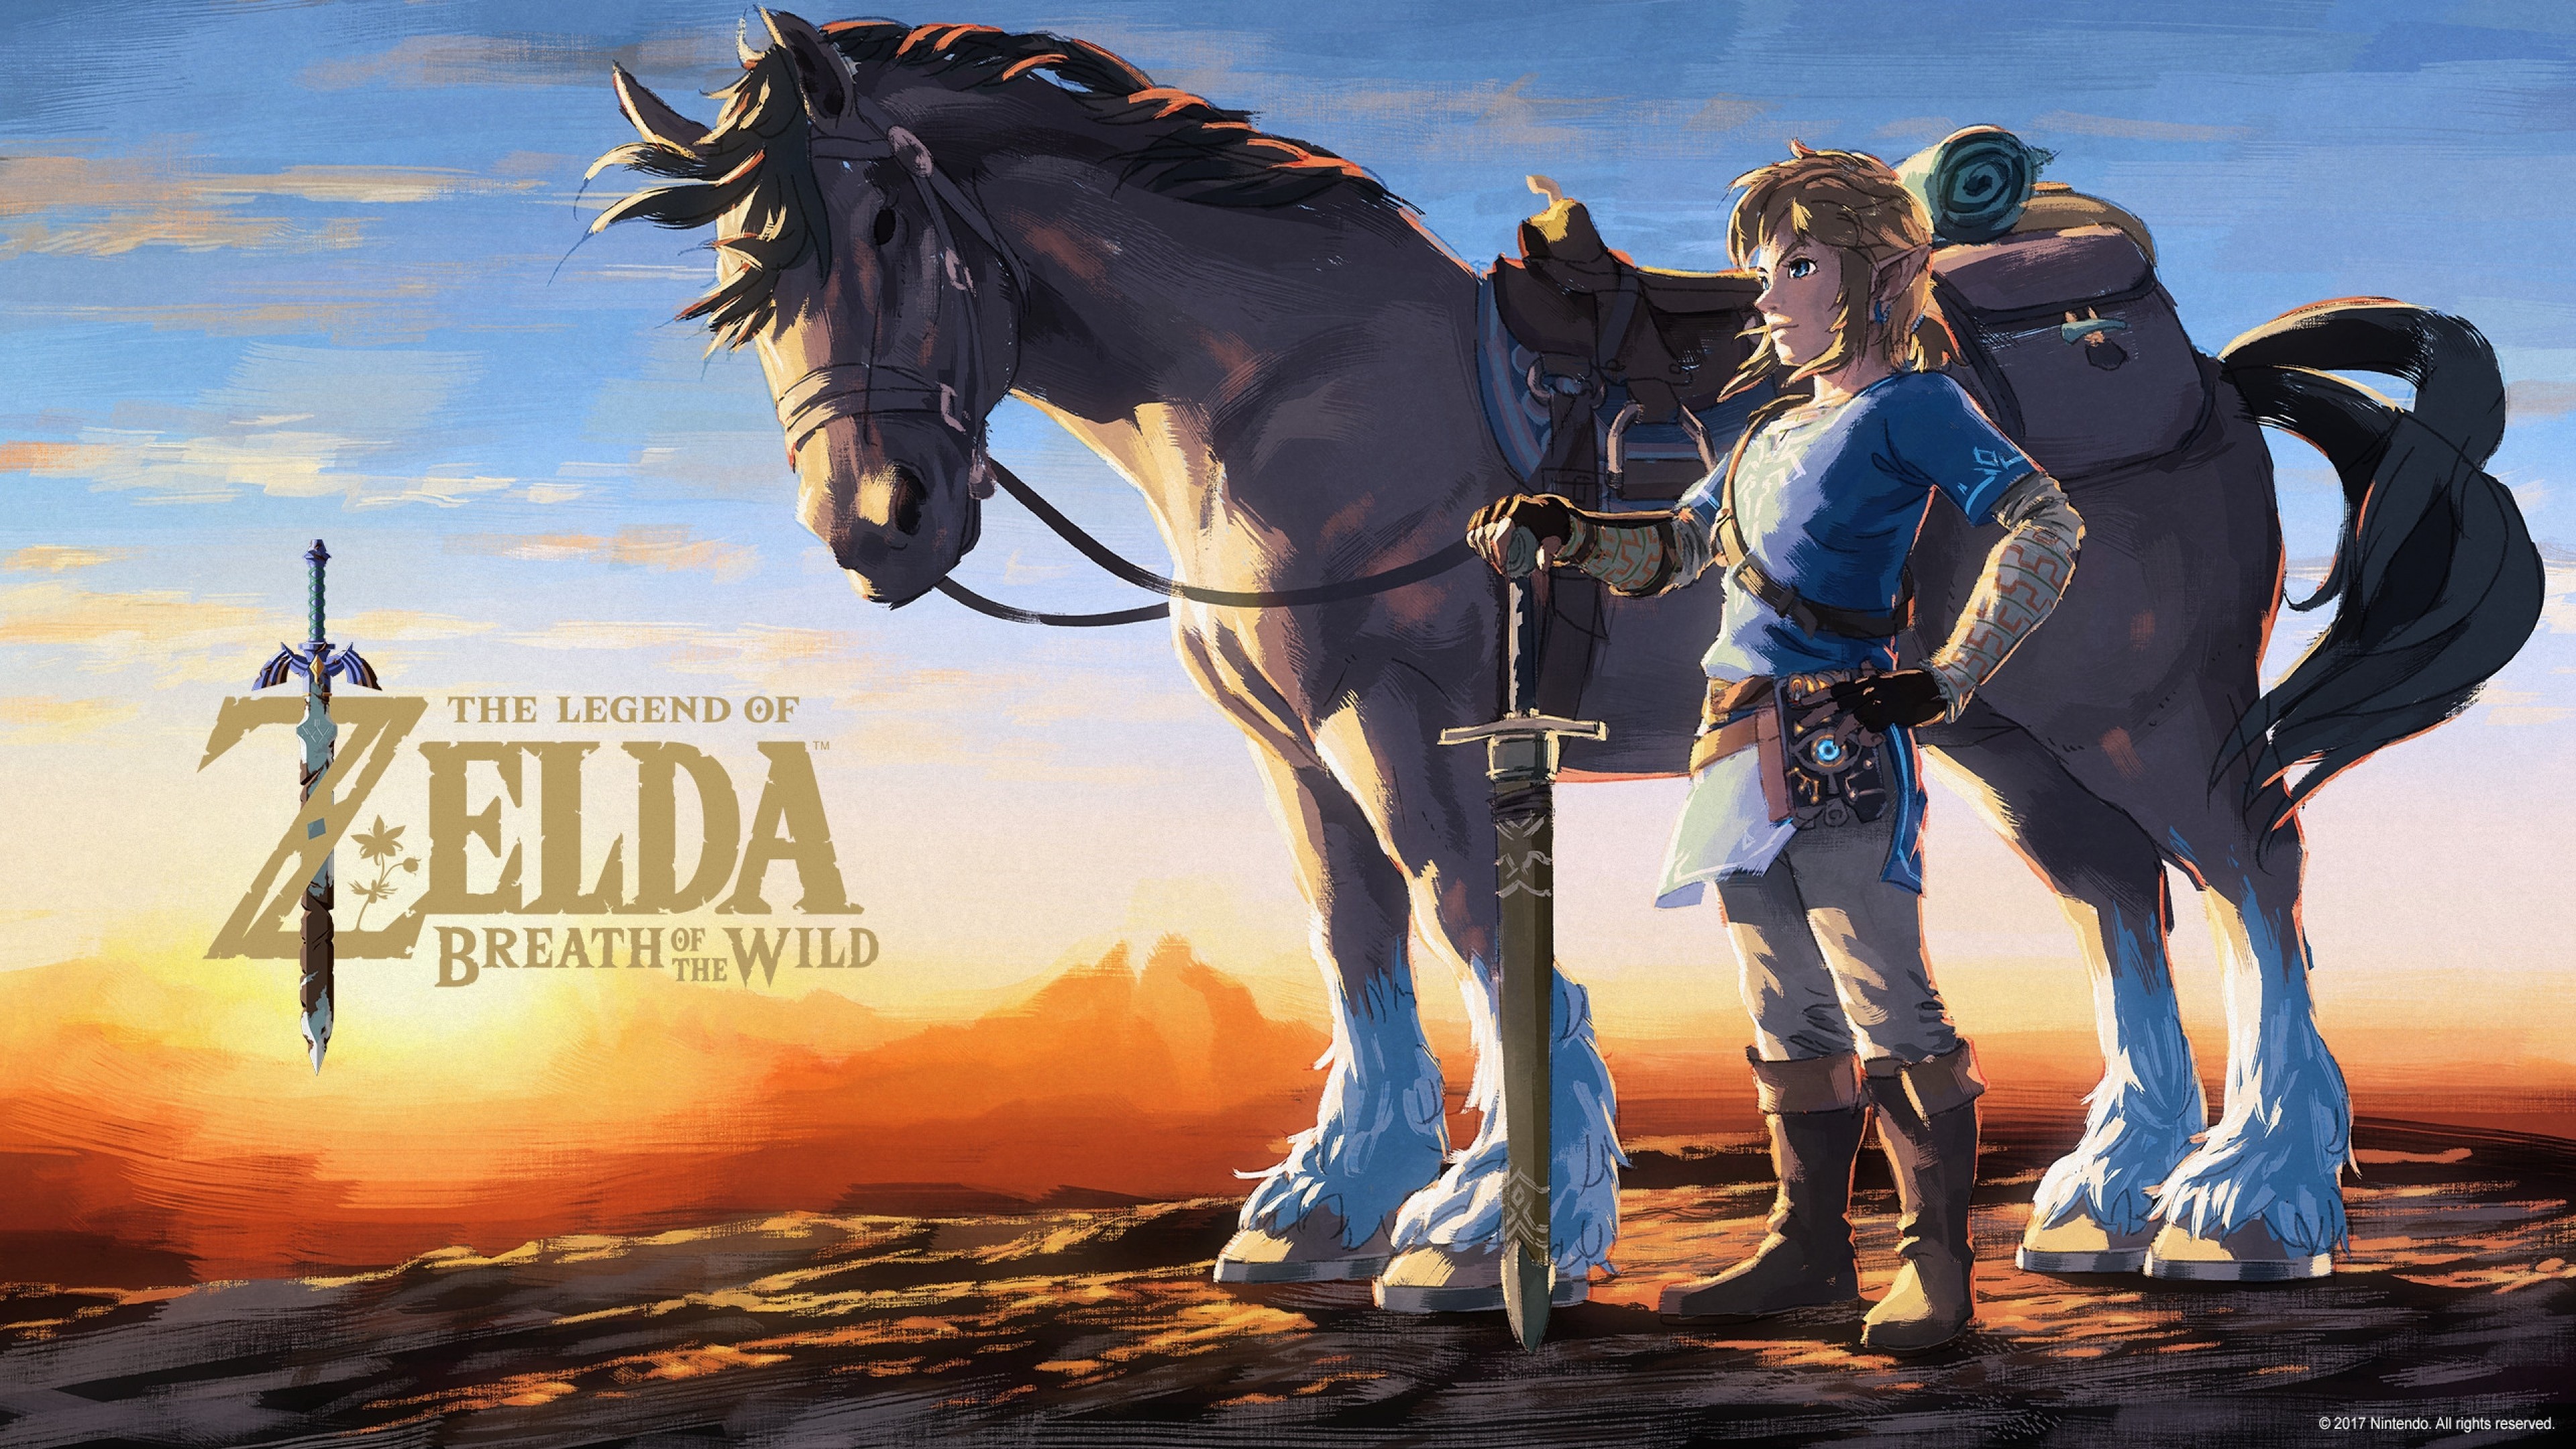 The Legend of Zelda: Breath of the Wild - Link on Horseback